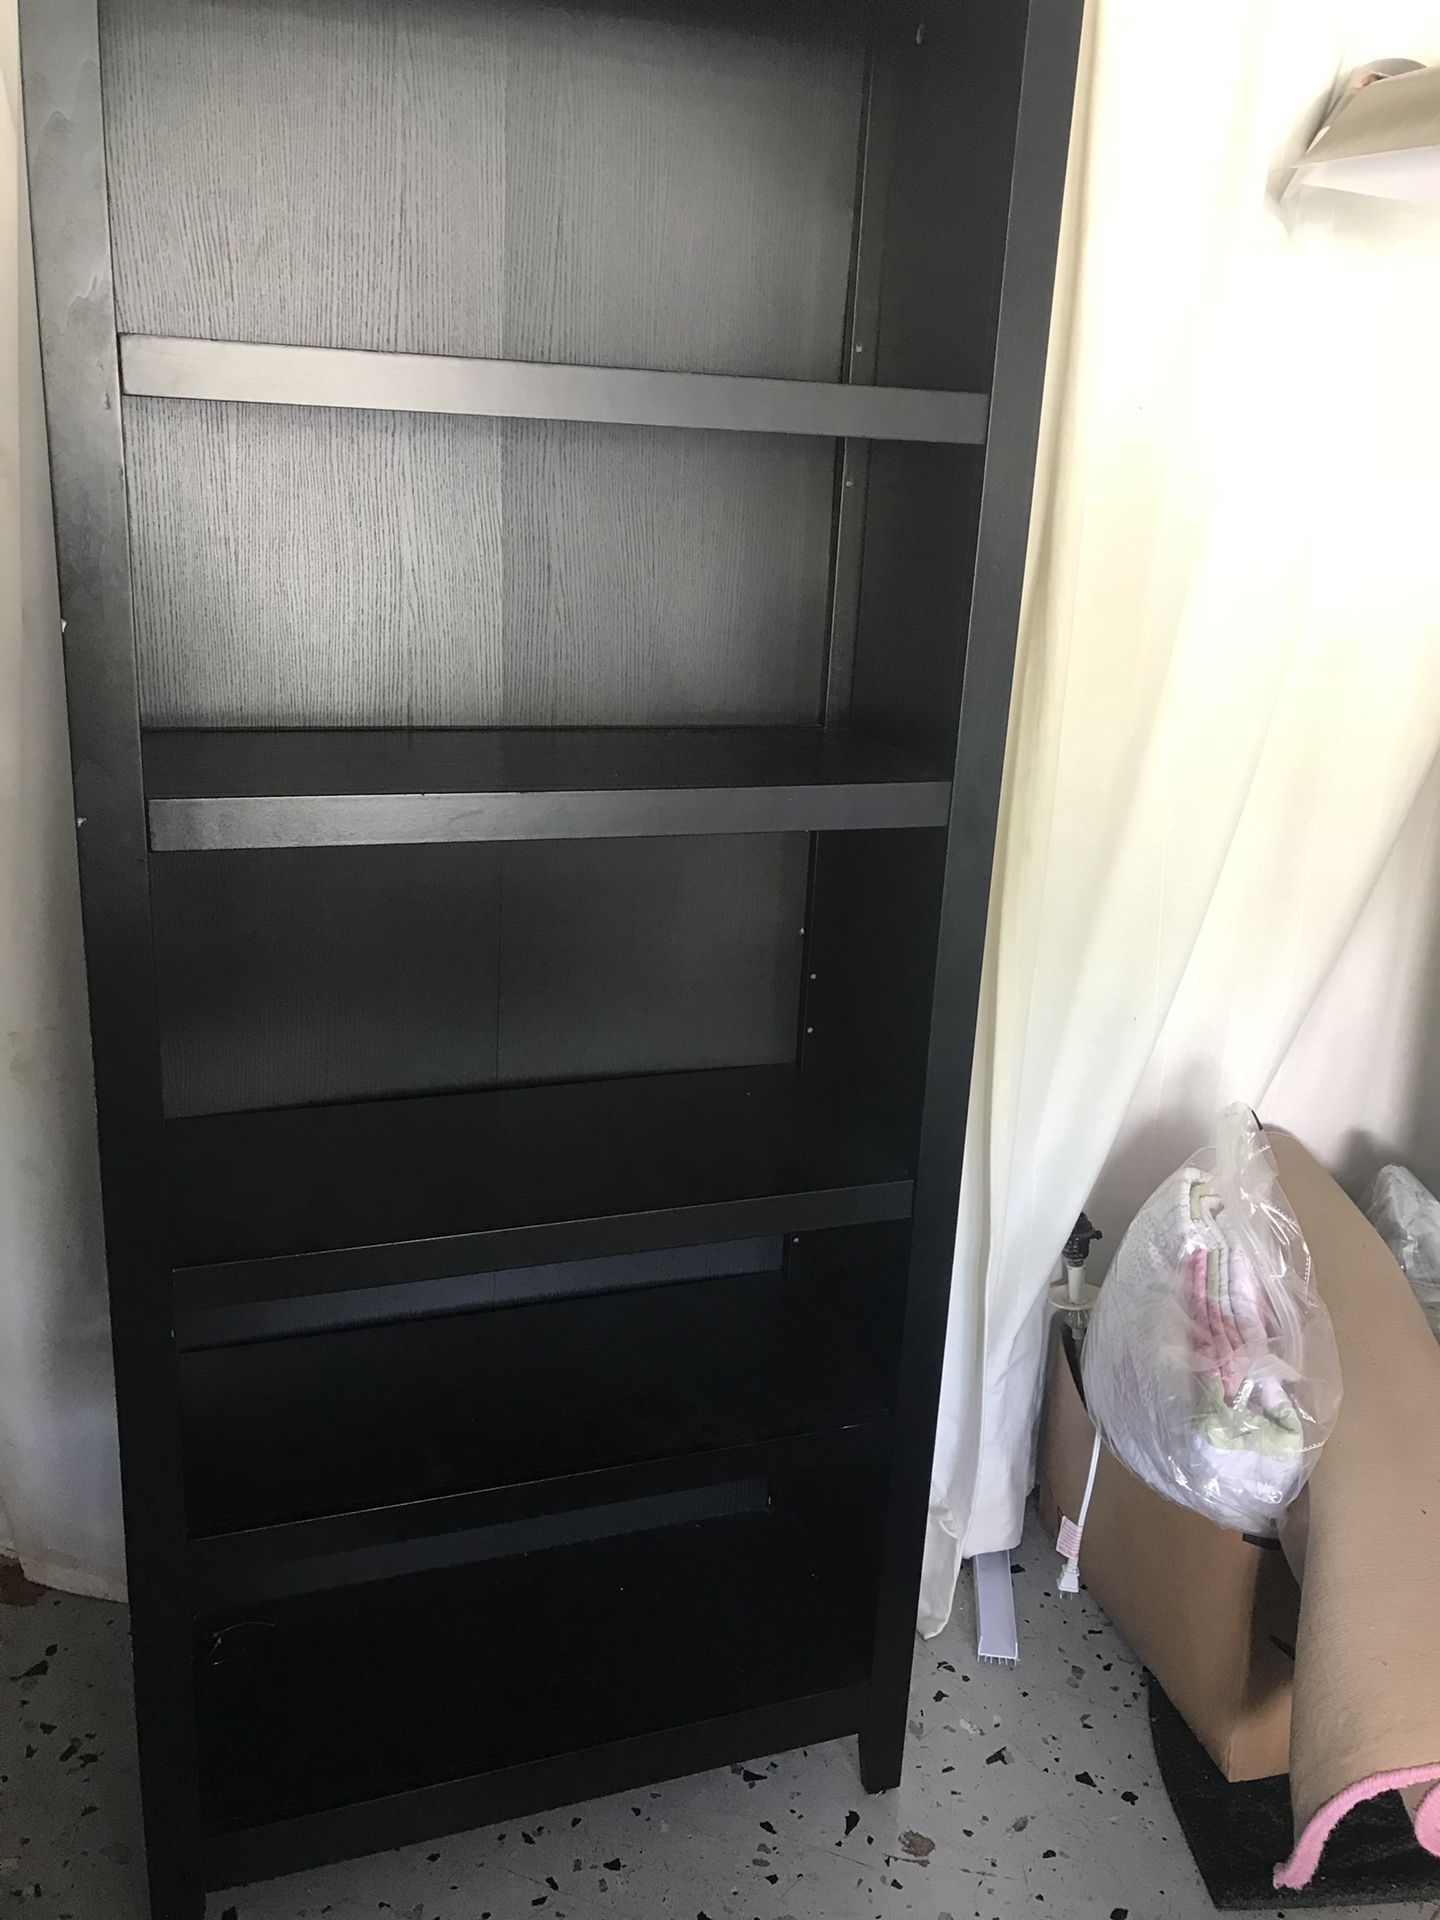 Black bookshelf with 6 shelves